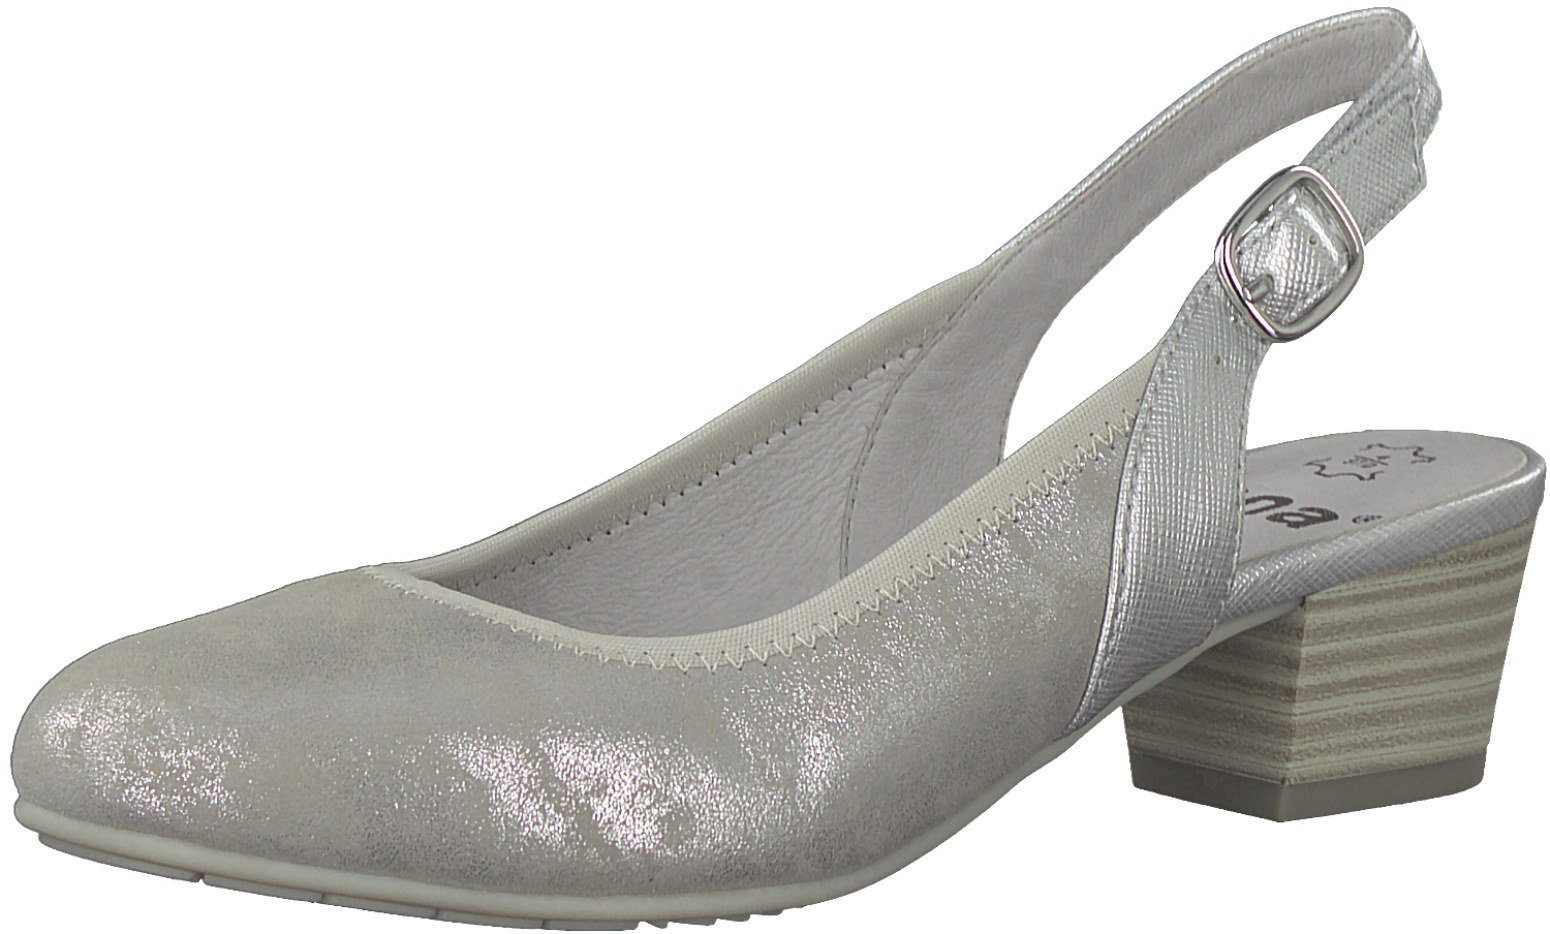 Туфли женские Jana, цвет: серебристый. 8-8-29590-20-212/220. Размер 41